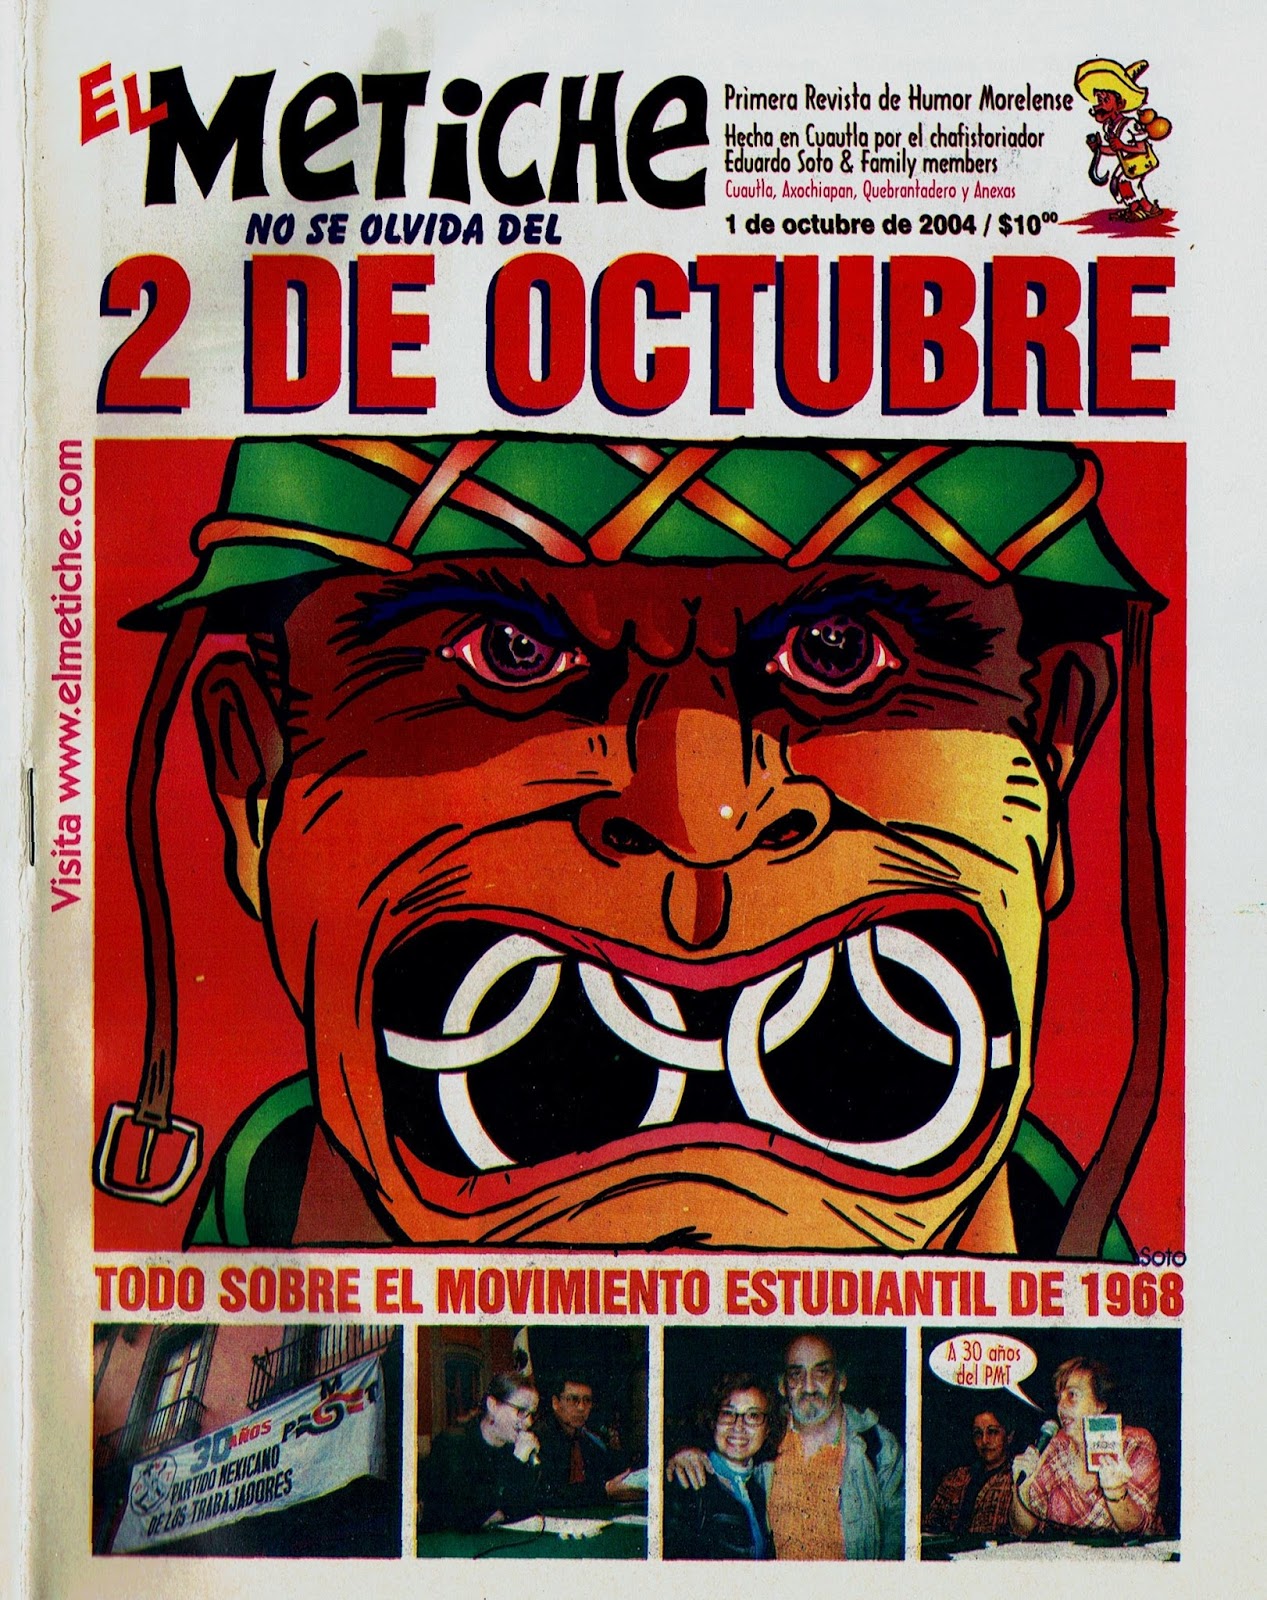 MUCAHI BASSOCO: 2 de octubre 1968 revista el metiche soto video carton caricaturas